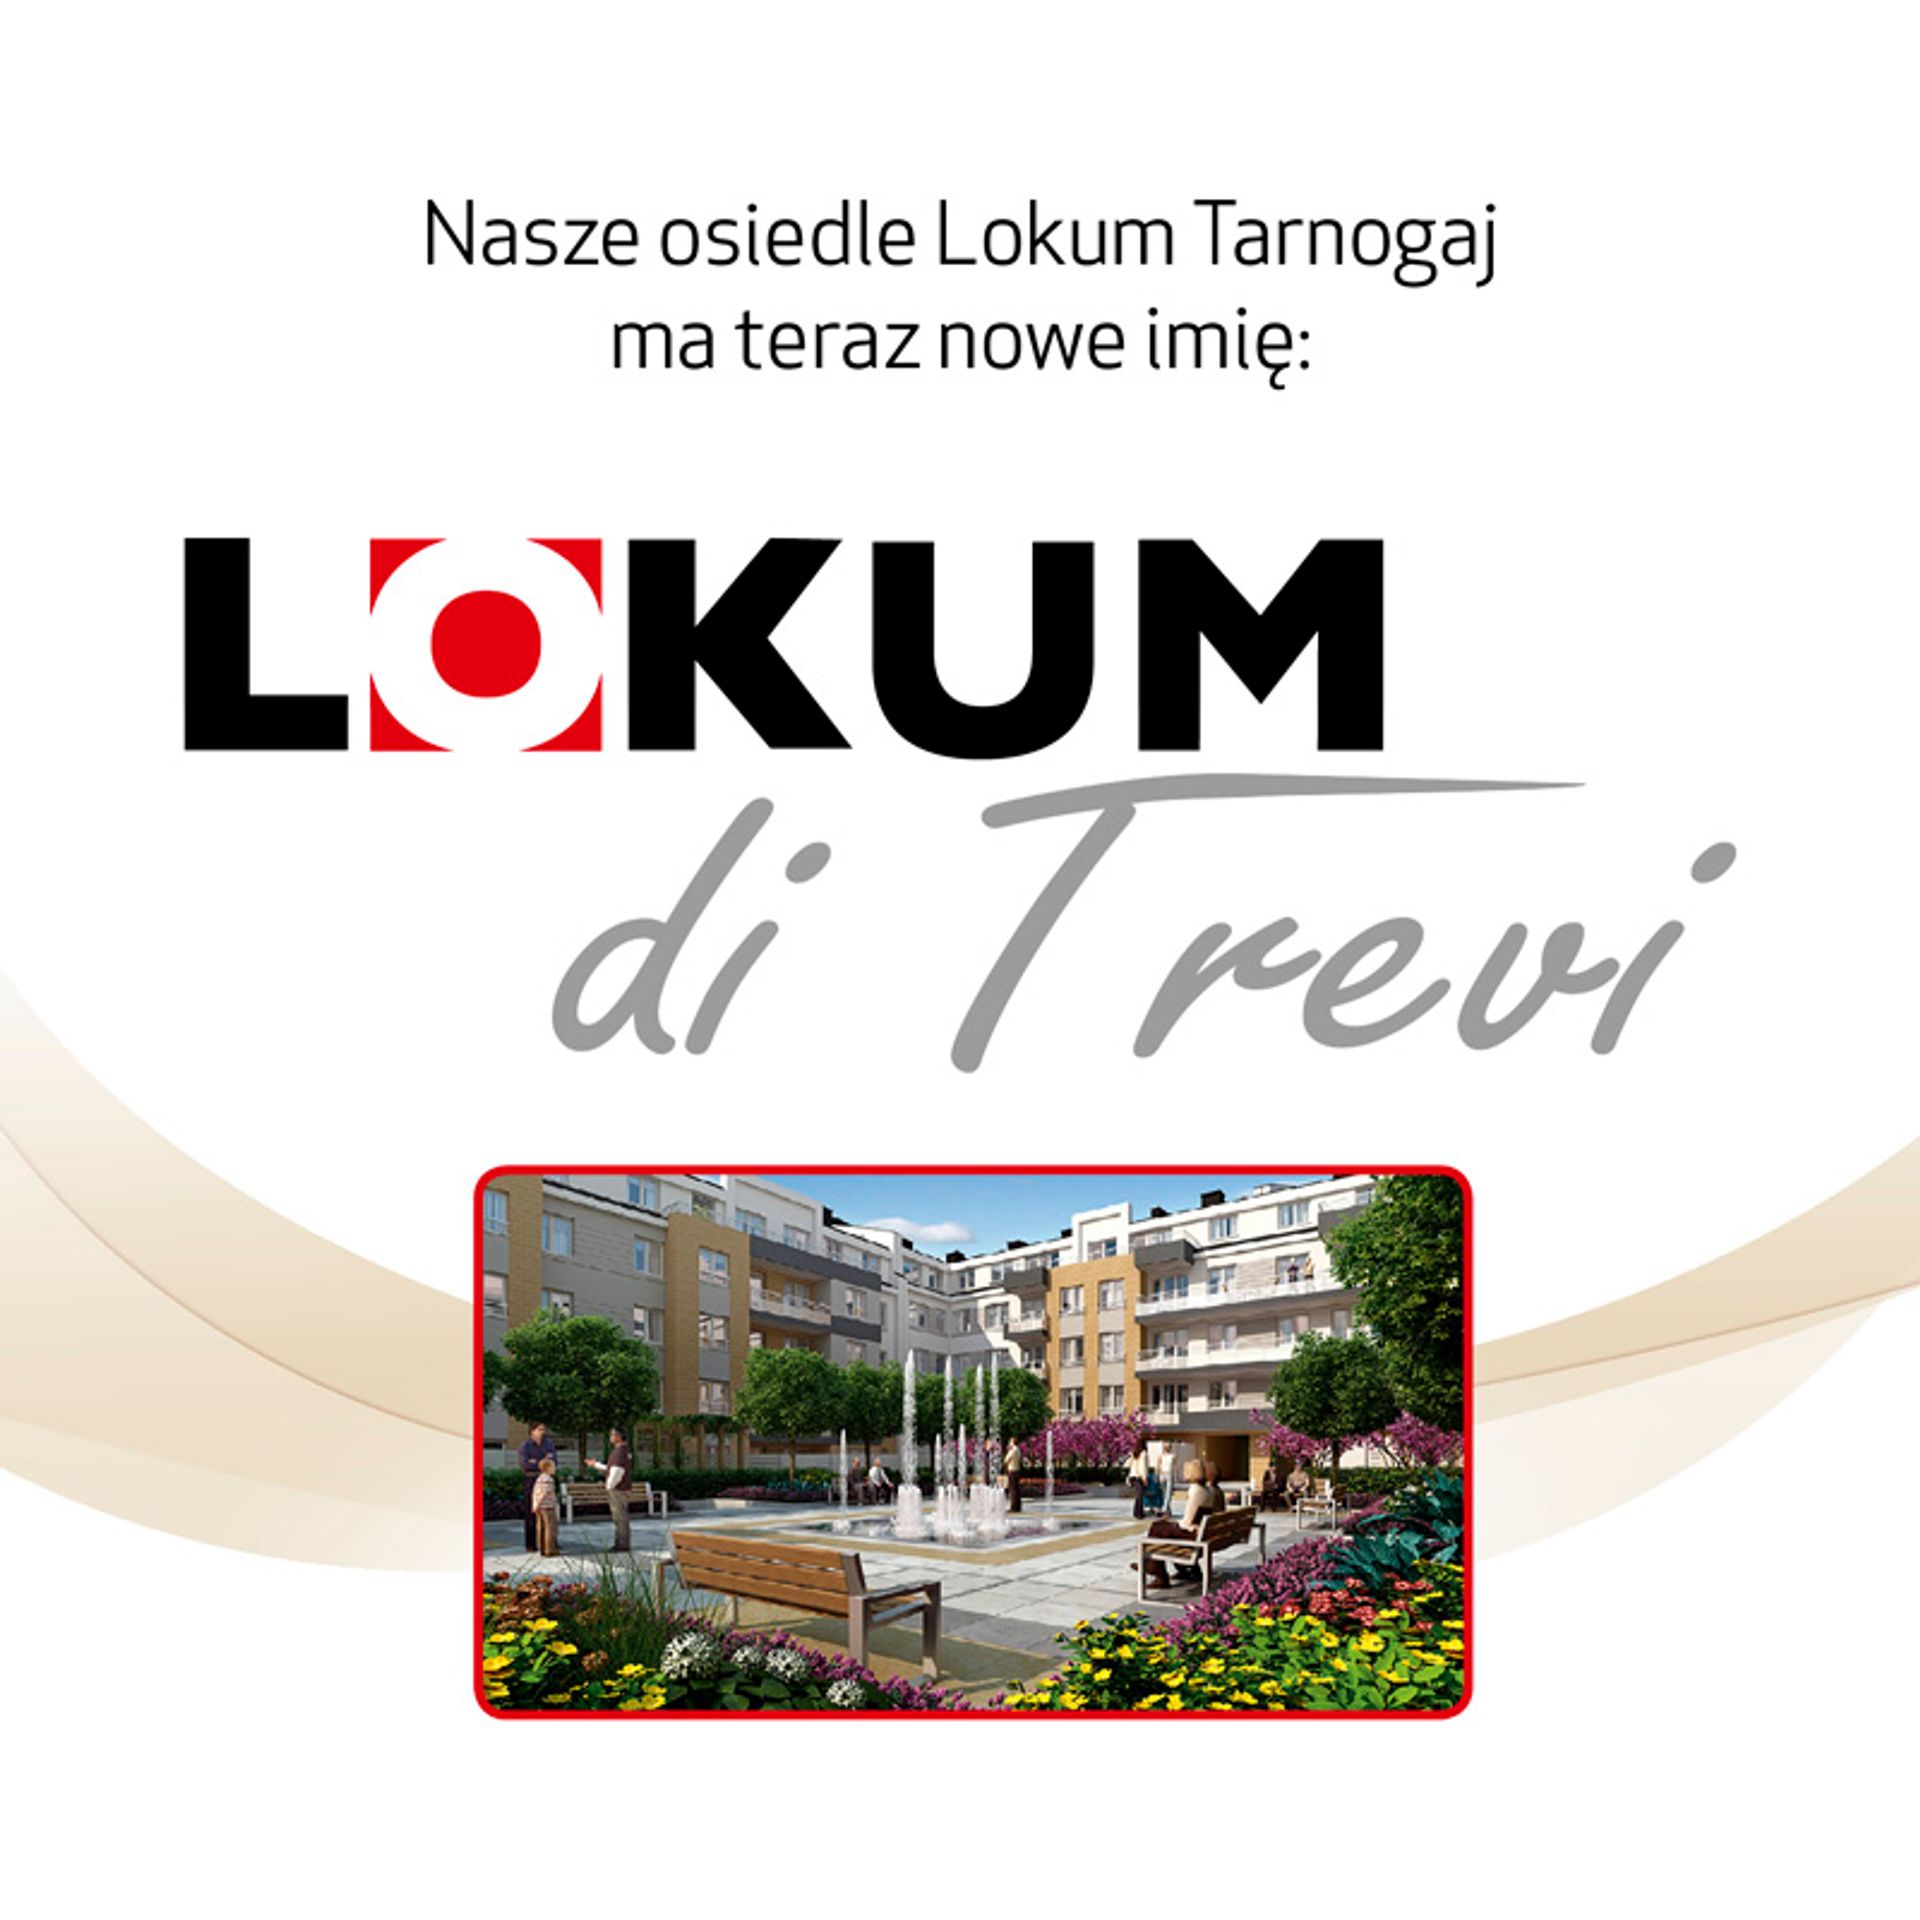  Lokum + &#8211; wyjątkowa oferta dla mieszkańców Lokum di Trevi